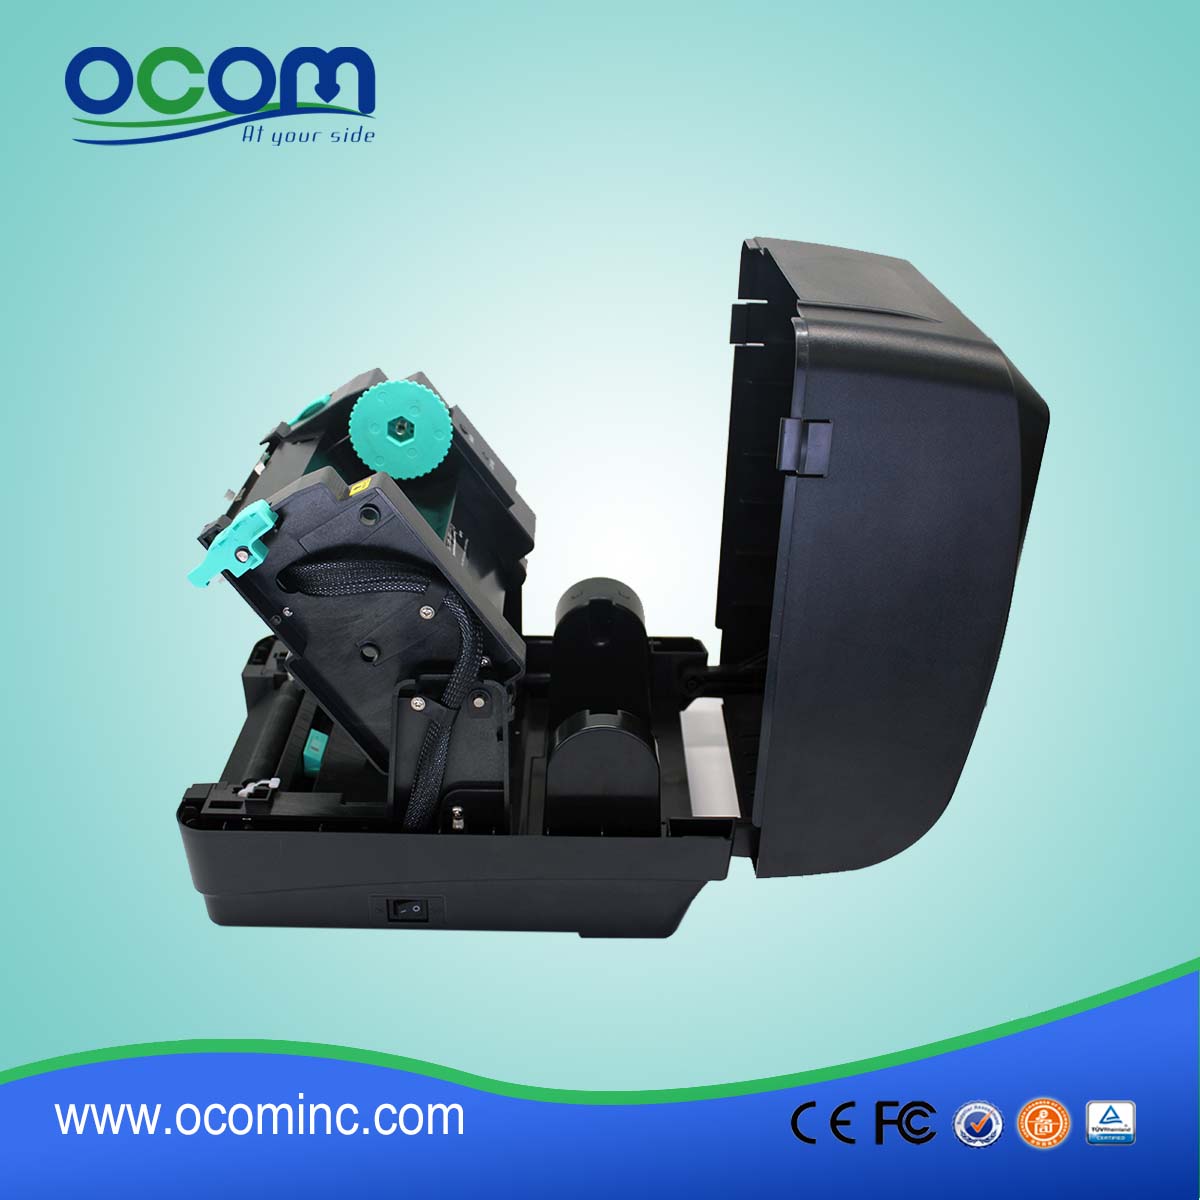 OCBP-004--2016 OCOM new design high quality printer to print stickers,sticker printing